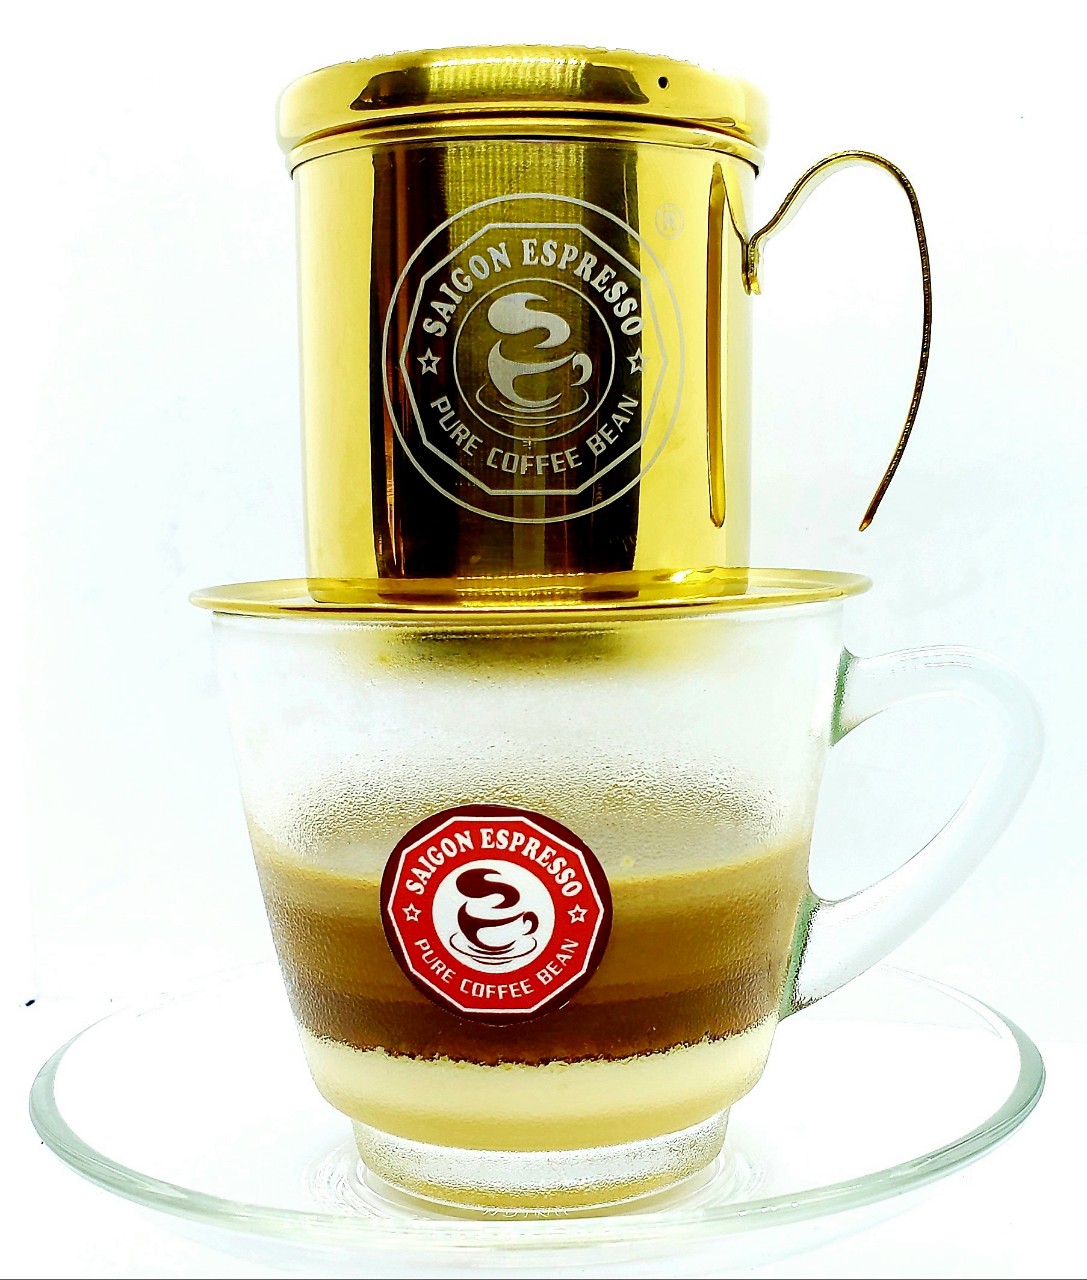 Cà phê bột nguyên chất, rang mộc Relax Blend - Saigon Espresso. Túi 500g, Cà phê không hương liệu, không độn đậu, bắp, không chất bảo quản. 